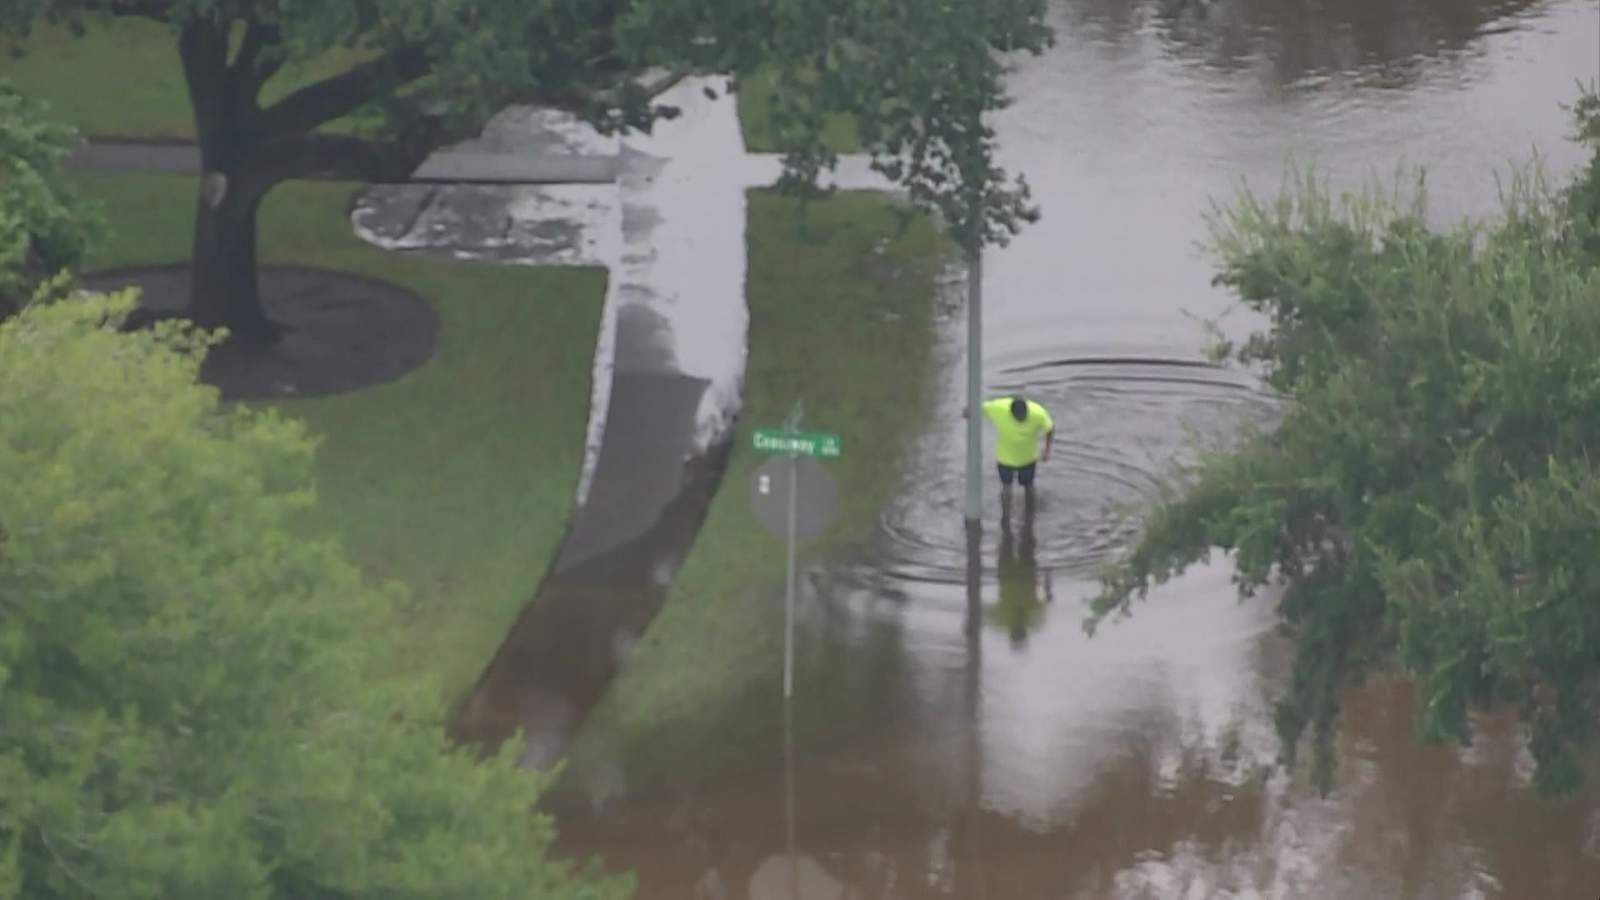 VIDEO: Sky 2 surveys Houston area after Beta’s flooding